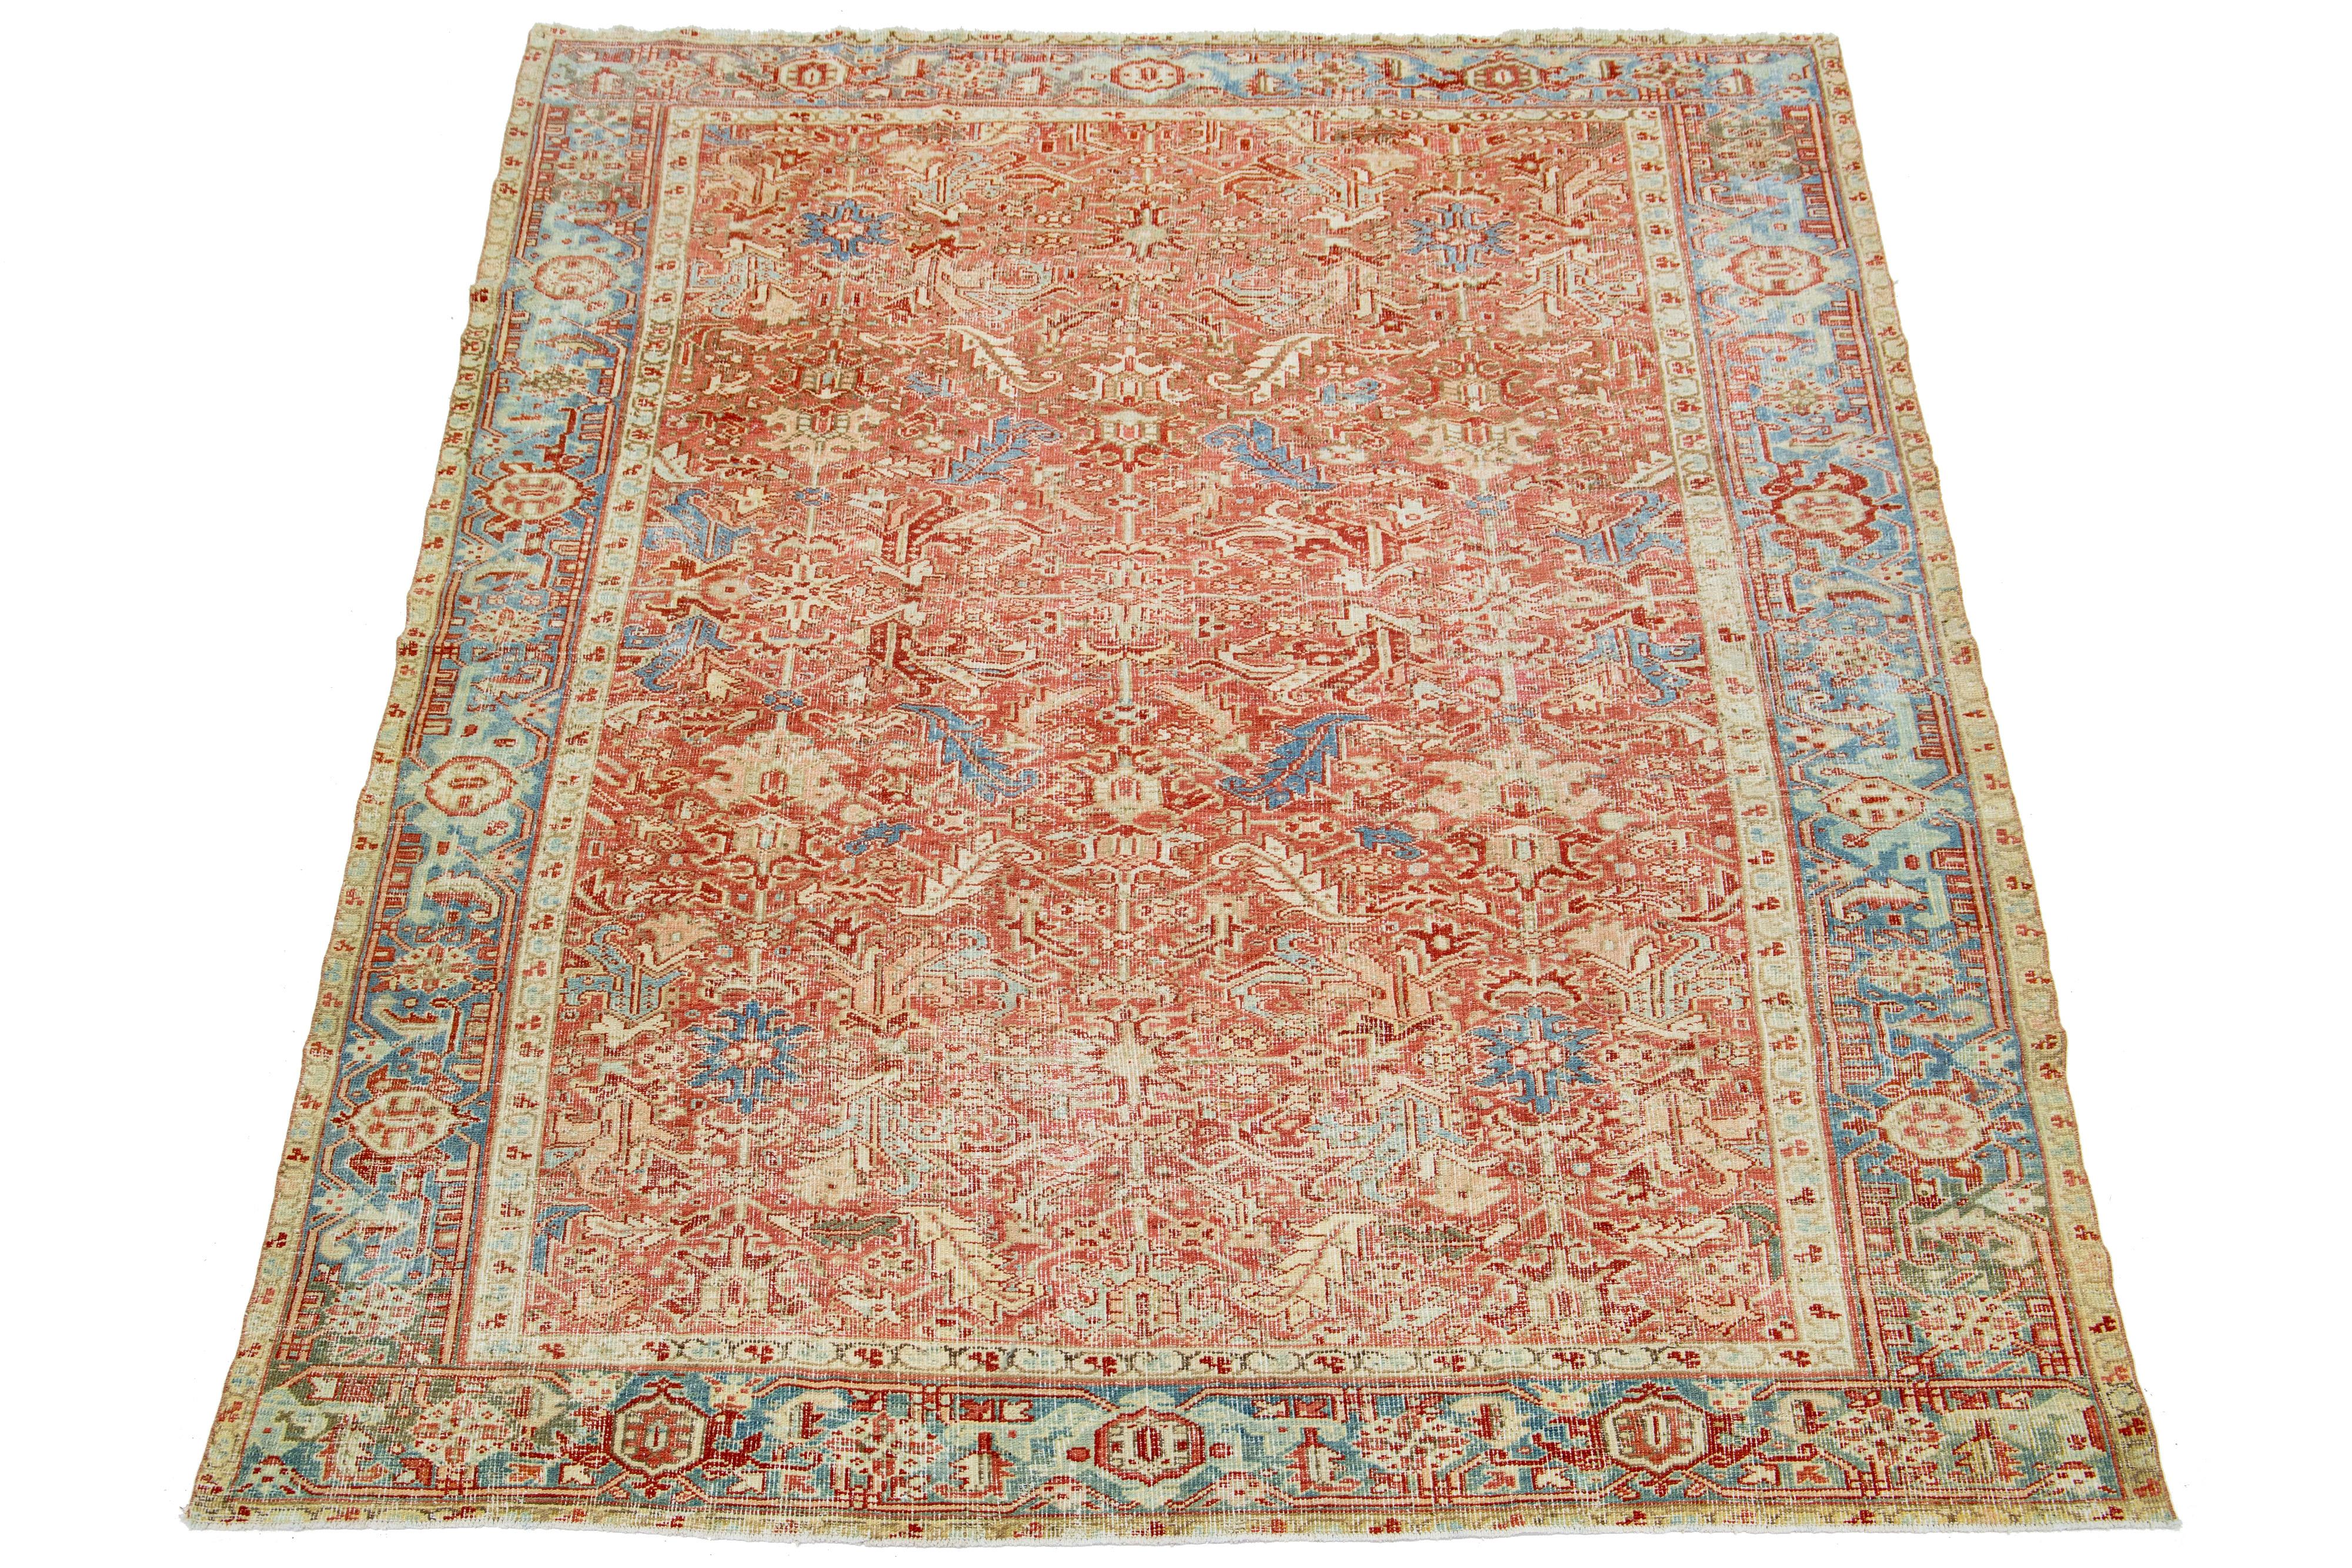 Der antike Heriz-Teppich besticht durch sein beeindruckendes Medaillonmuster und seine handgeknüpfte Wollkonstruktion. Das zart rostfarbene Feld bildet den Hintergrund für das auffällige geometrische Blumenmuster in Blau- und Beigetönen, das eine